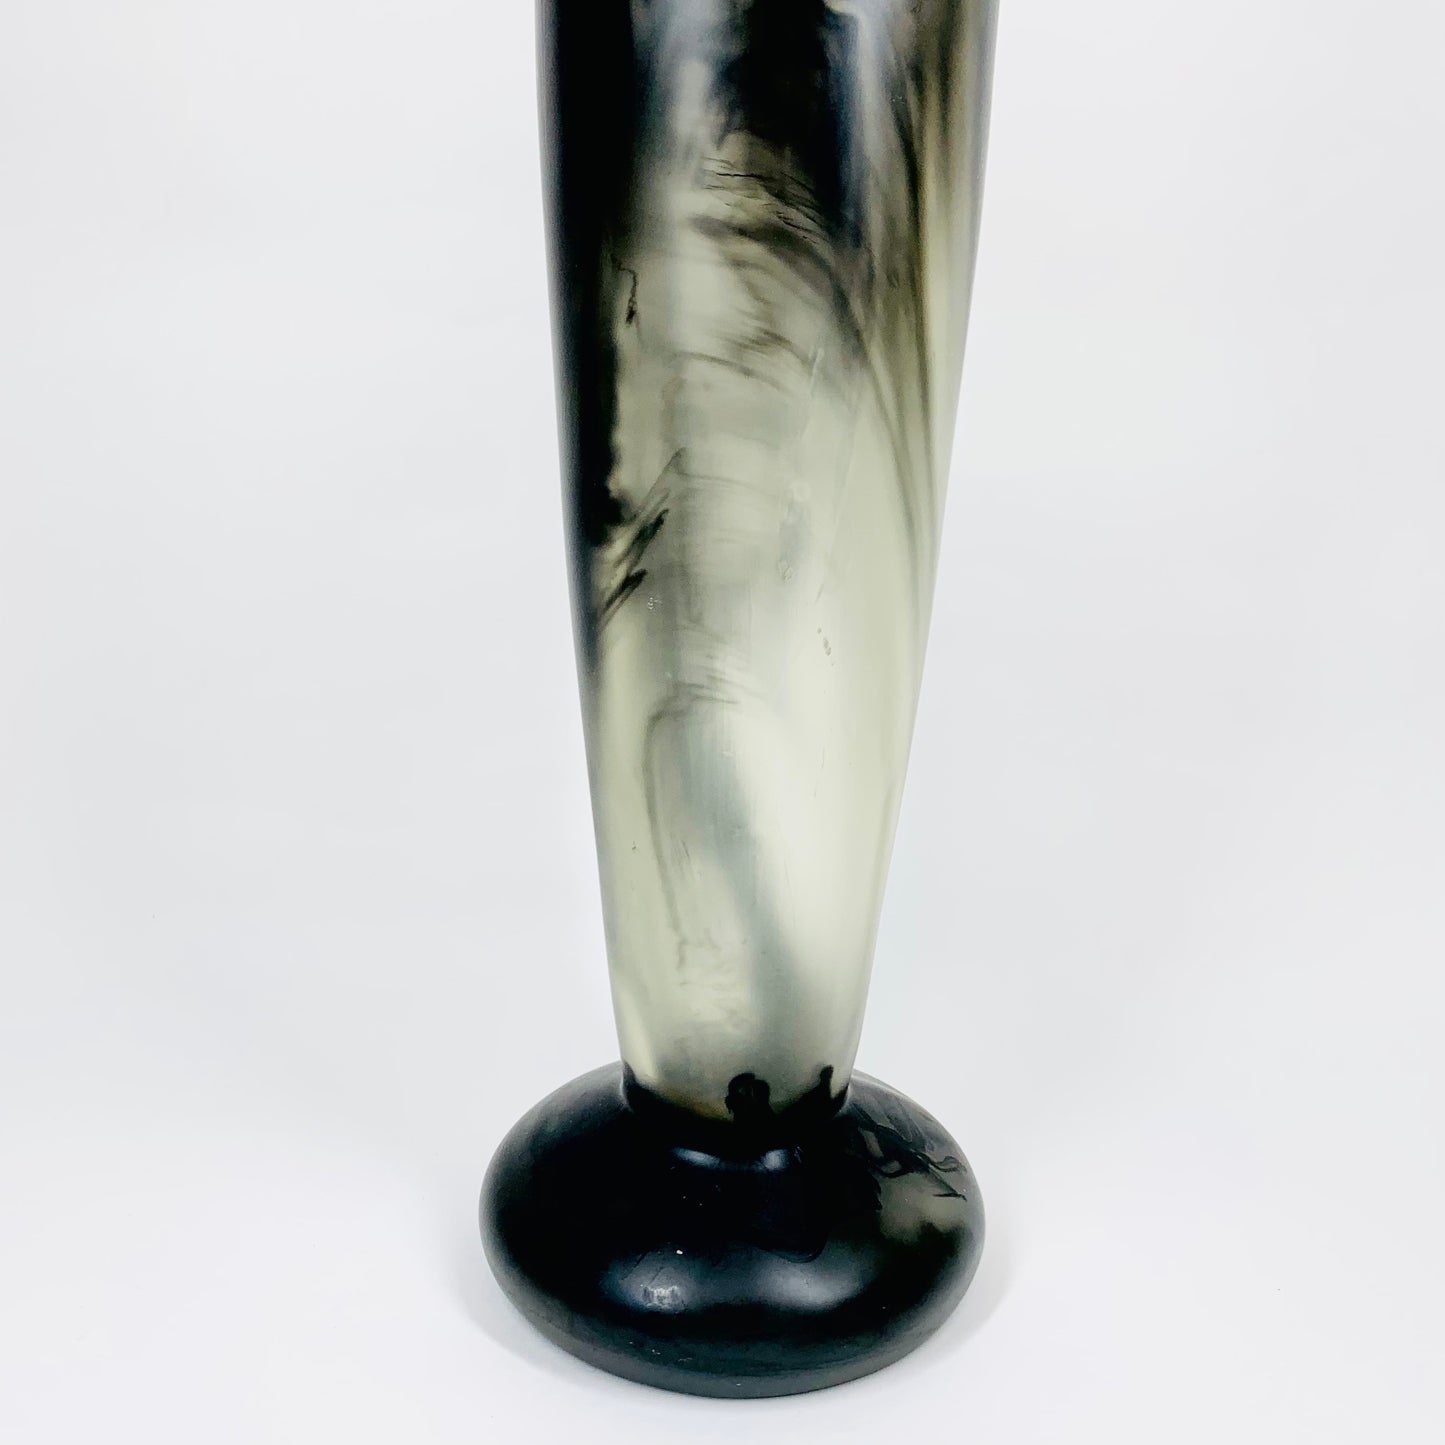 Vintage tall brown resin cylinder vase